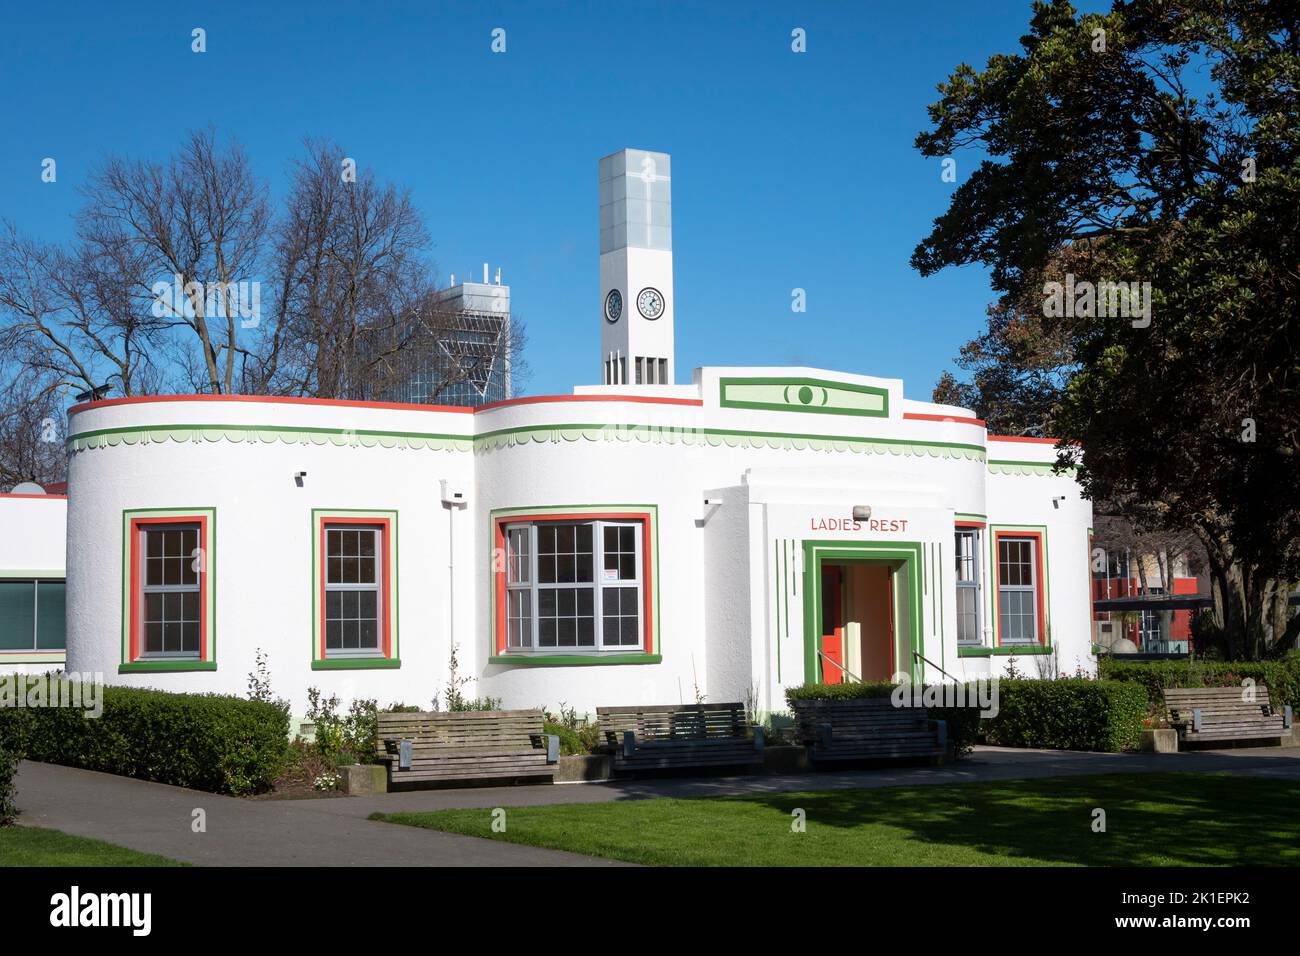 baños públicos Art Deco y cuartos de descanso para señoras, The Square, Palmerston North, Manawatu, Nueva Zelanda Foto de stock